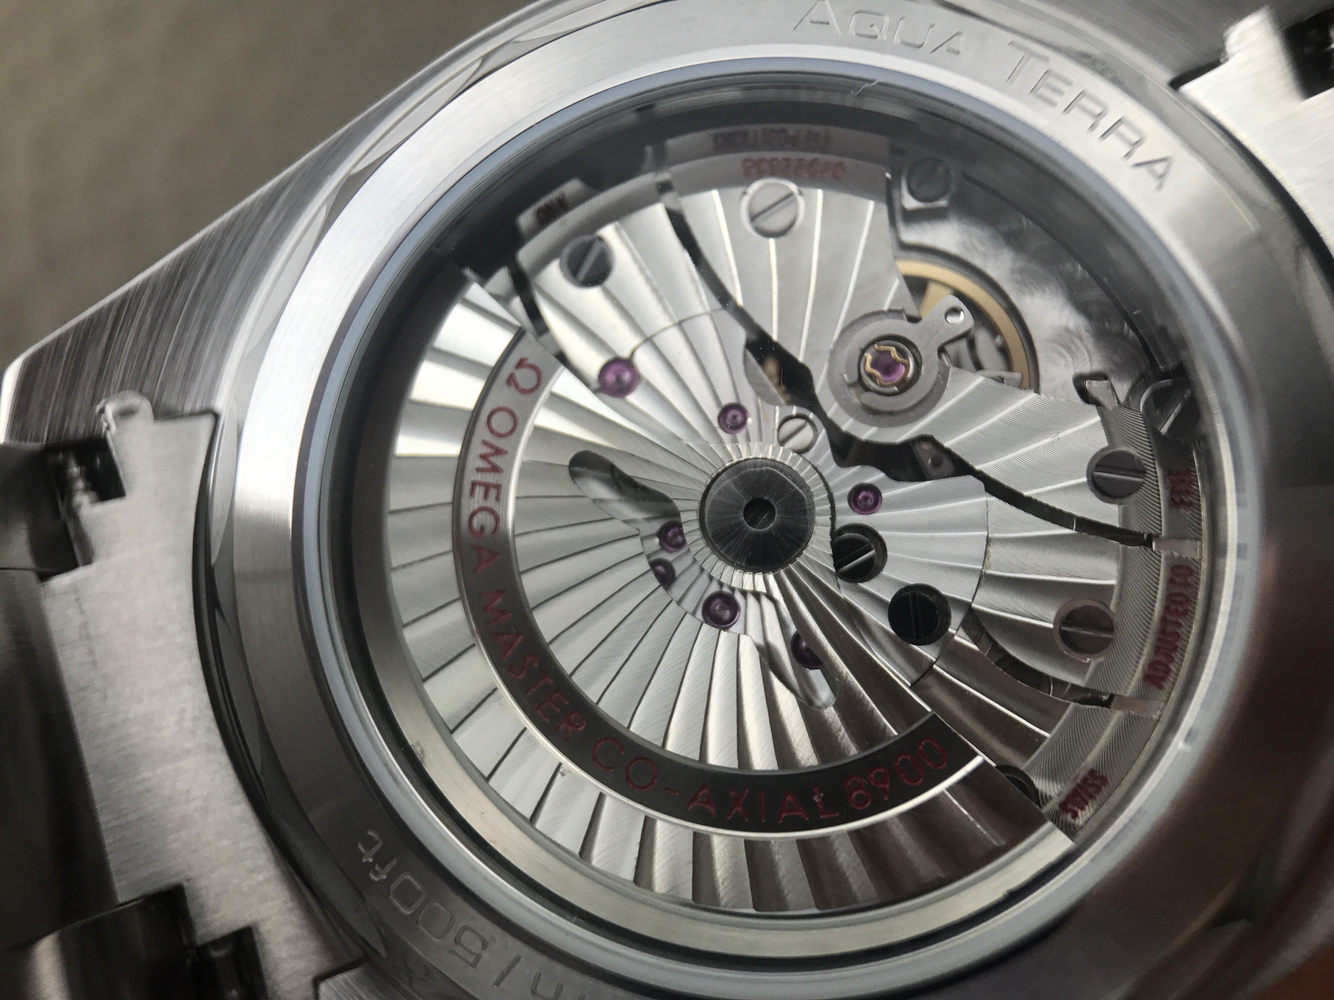 2023100823354974 - 歐米茄海馬高仿手錶評測 XF歐米茄海馬150米220.12.41.21.02.001￥3180